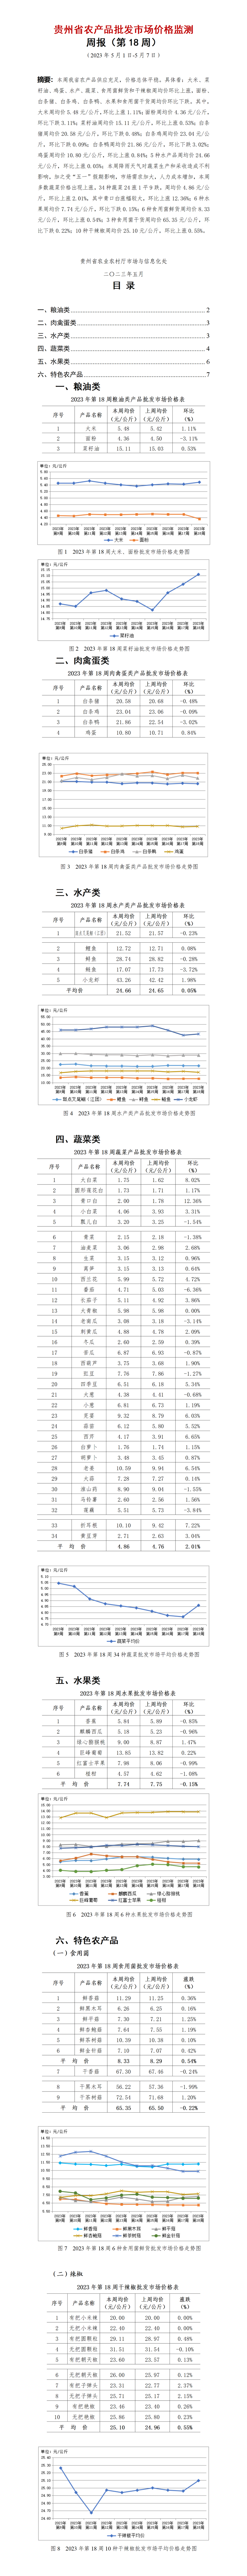 2023年18周-贵州省农产品批发市场价格监测周报-定_01